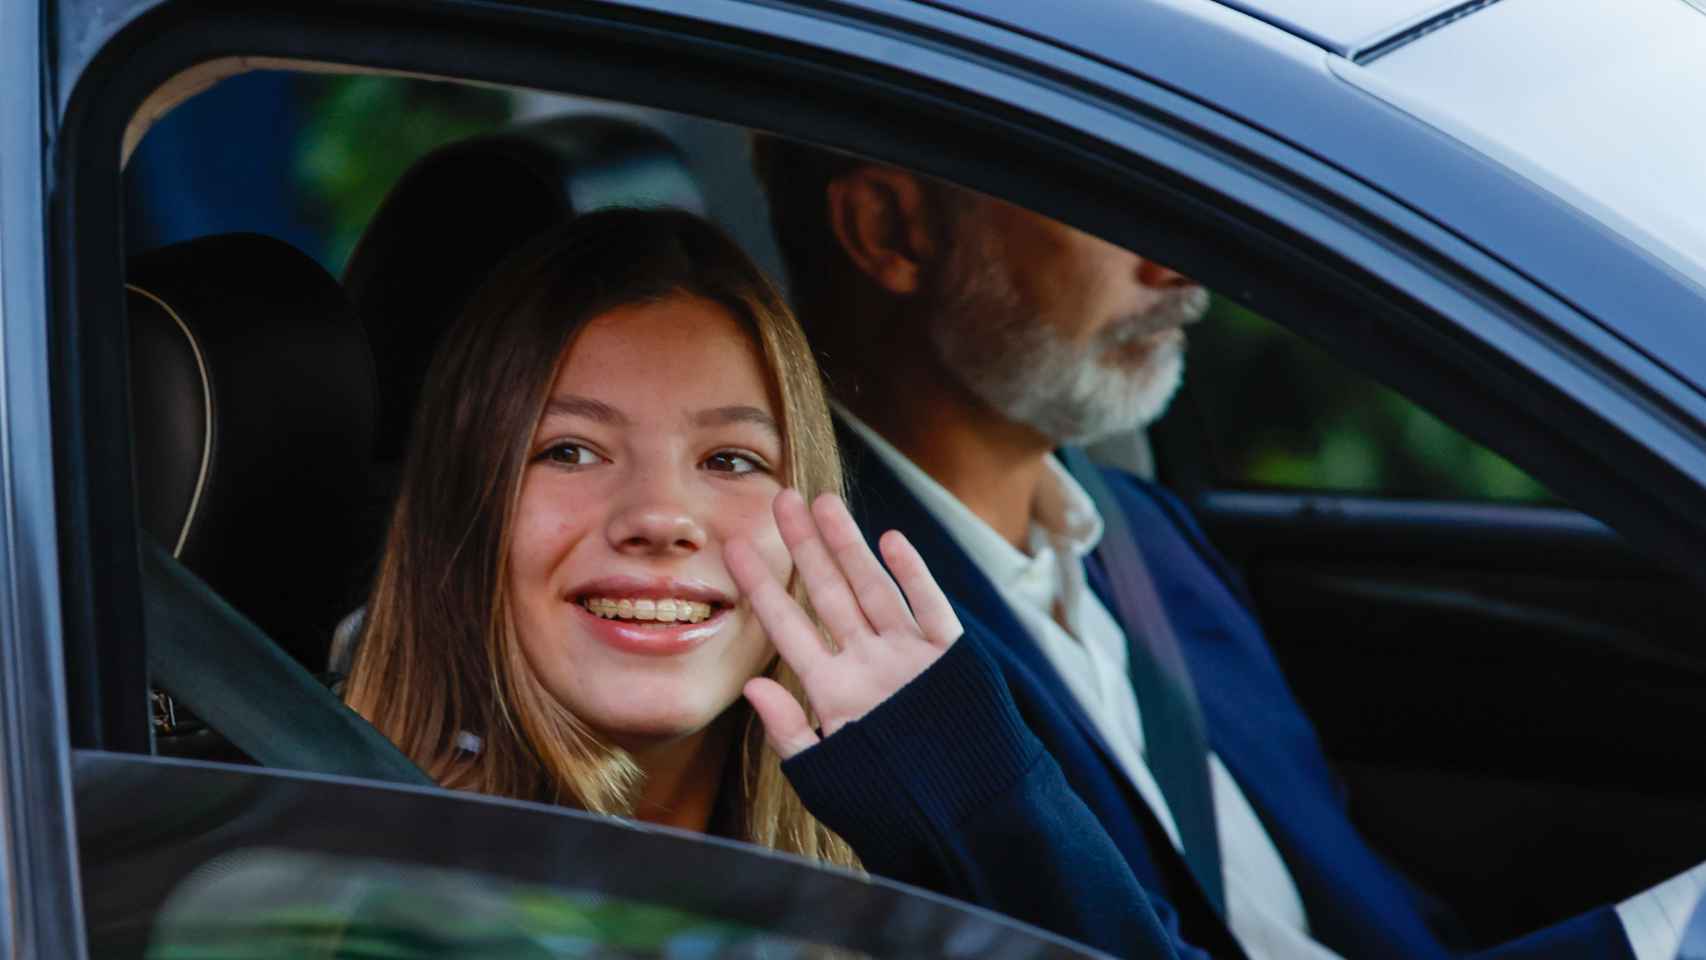 La infanta Sofía saluda dentro del coche en su primer día de colegio.